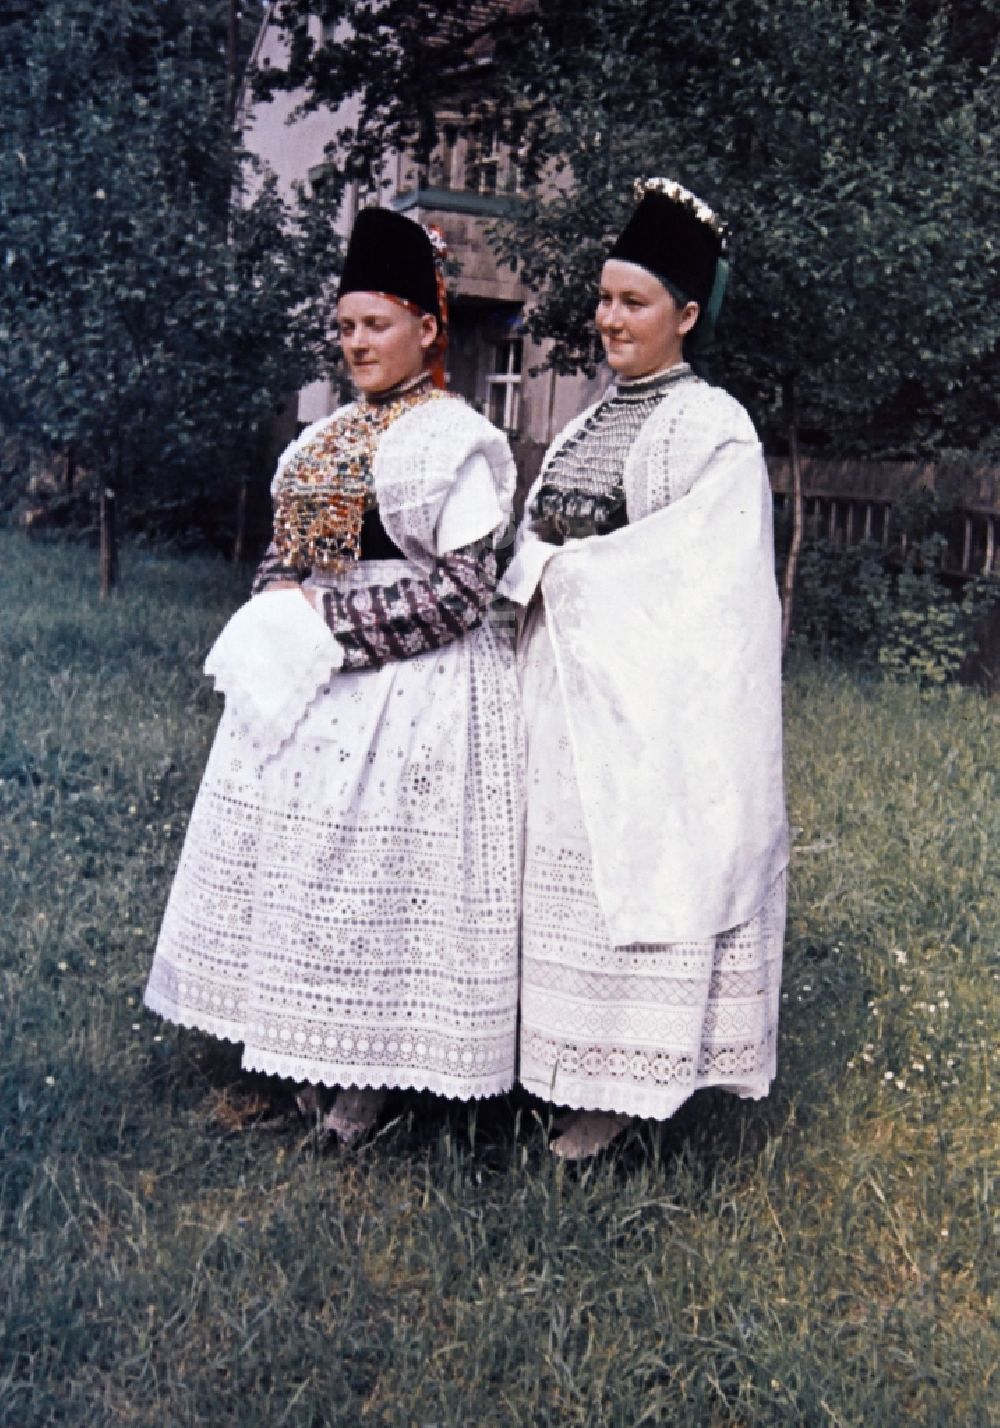 Radibor: Trachten- Kleidung der sorbischen Minderheit in Milkel im Bundesland Sachsen auf dem Gebiet der ehemaligen DDR, Deutsche Demokratische Republik